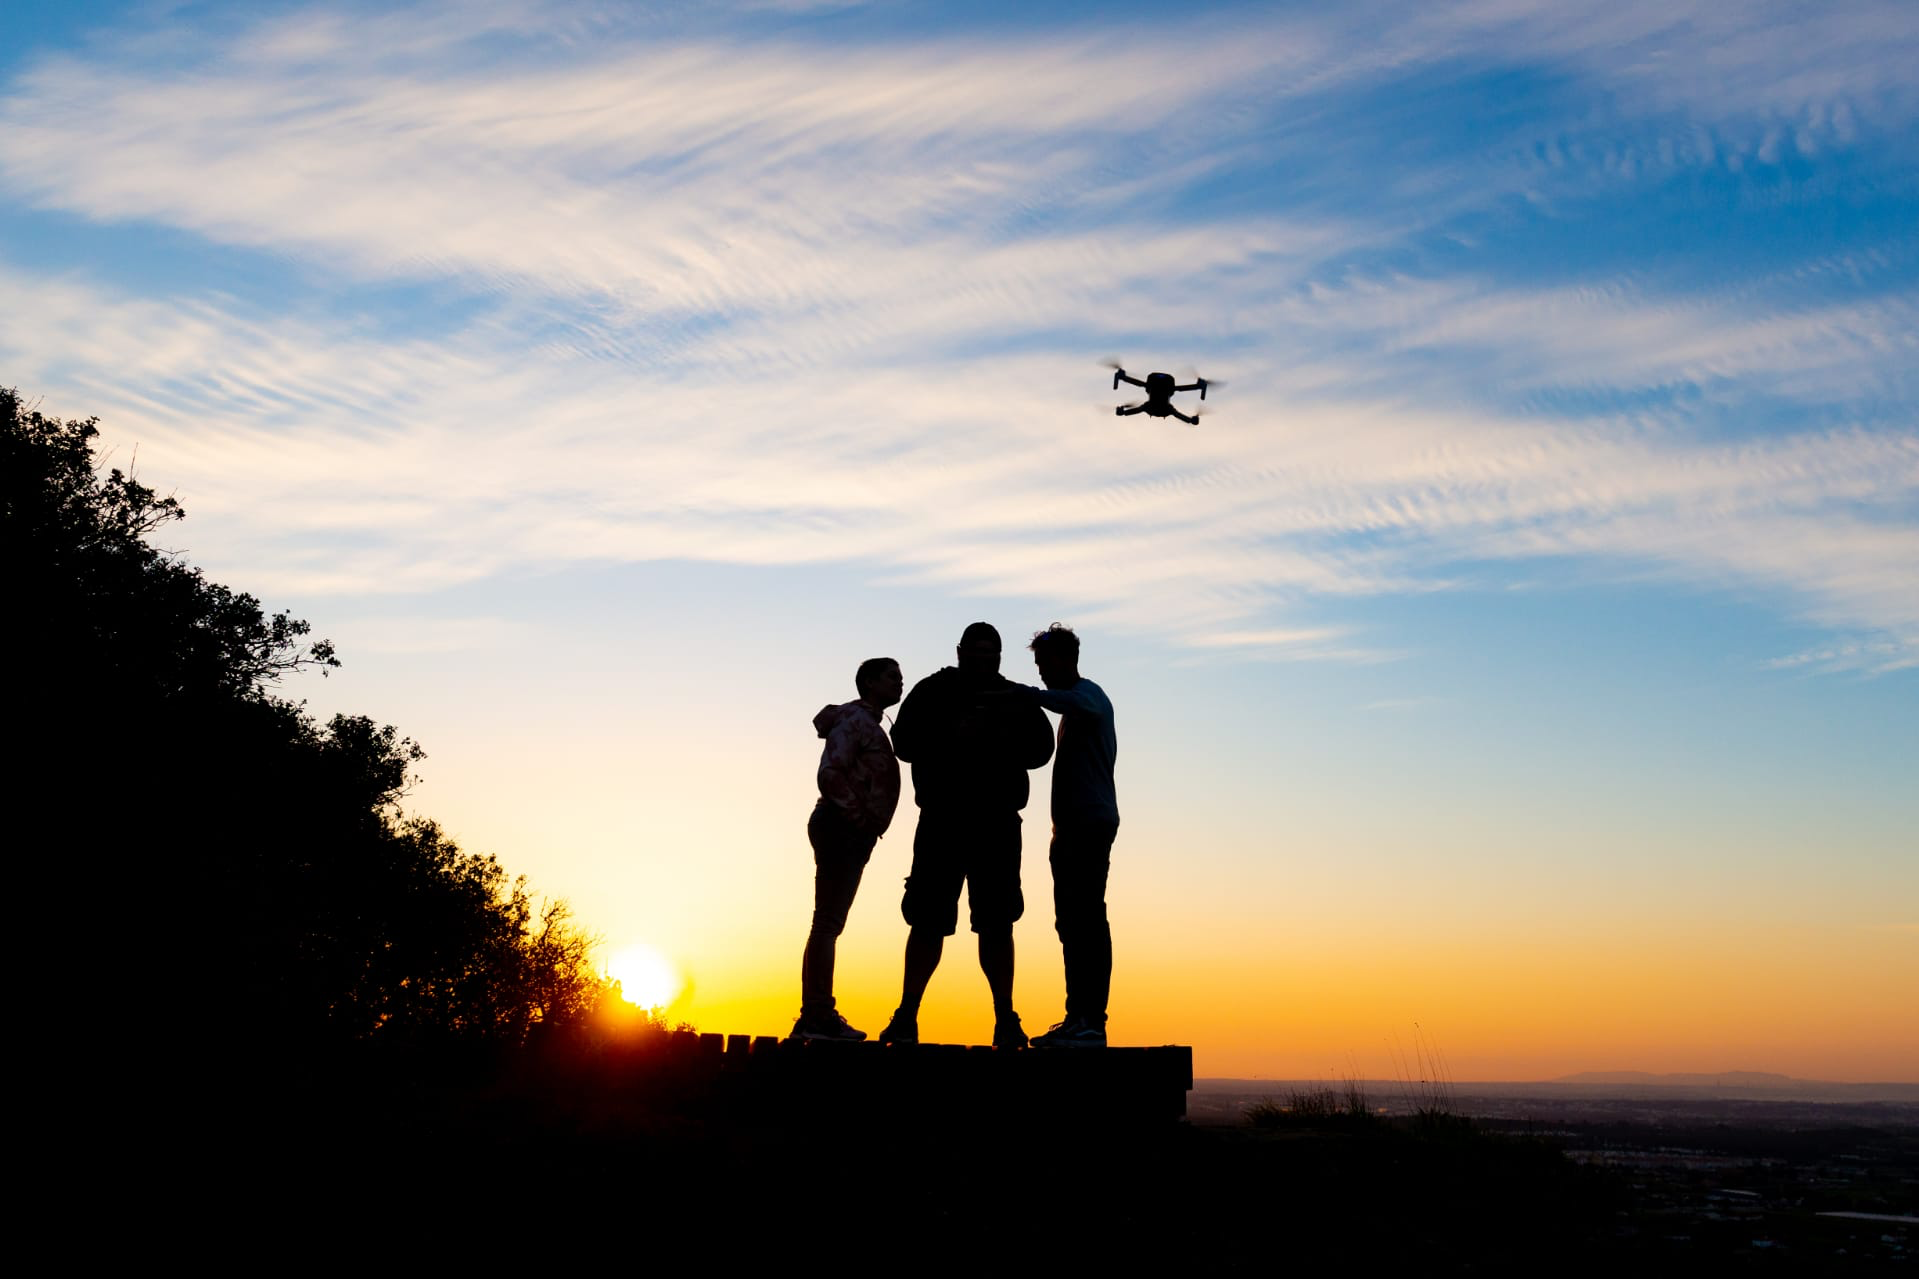 Connaissez-vous déjà les Mavic Range Drones de DJI ?